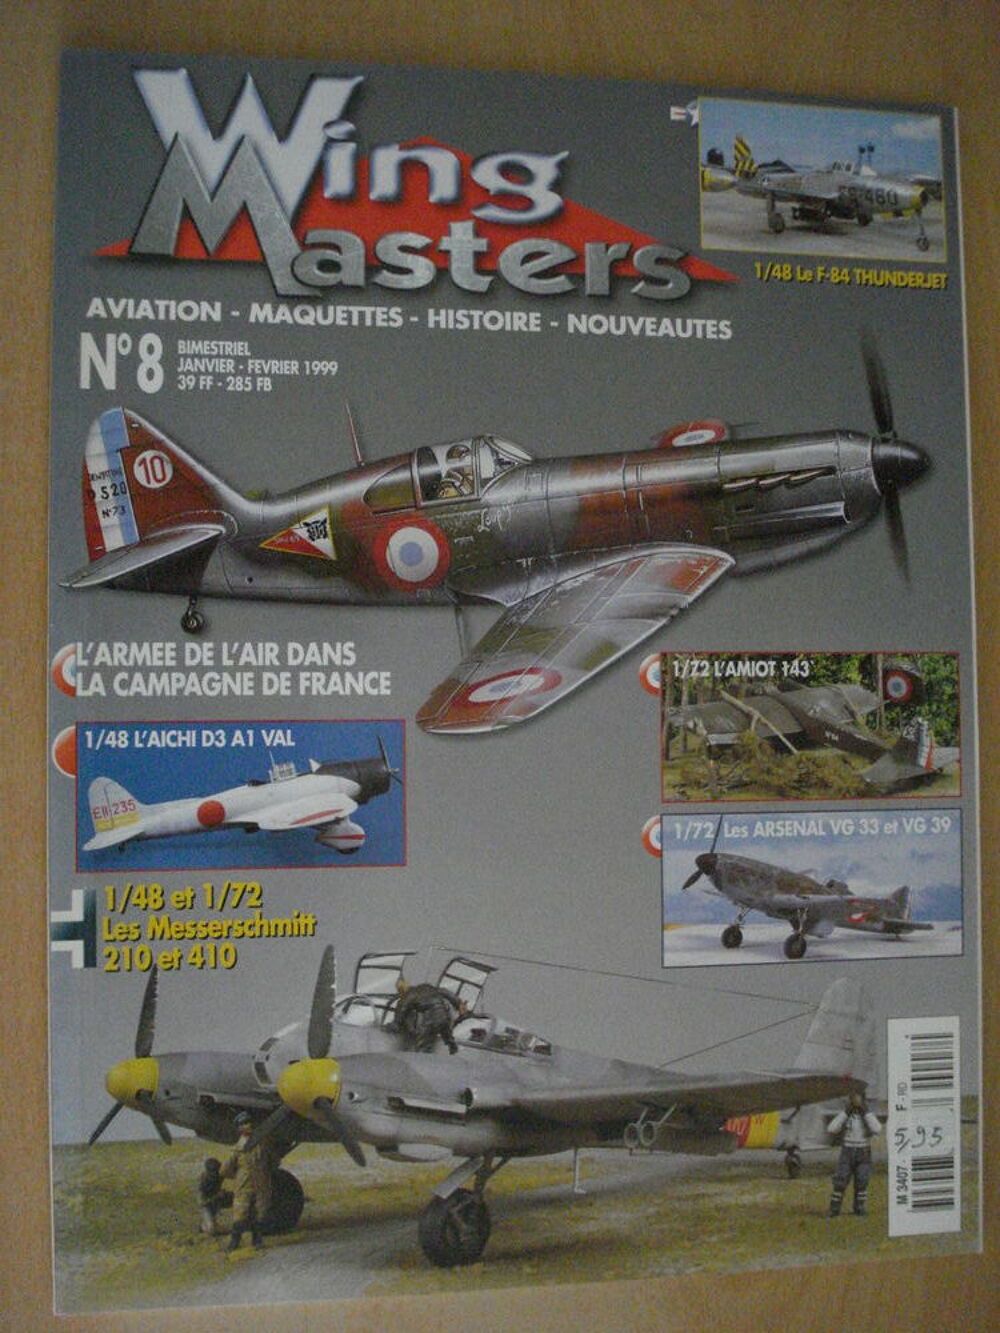 Wingmasters n&deg; 8 - Amiot 143 - Arsenal VG 33 &amp;39 Livres et BD